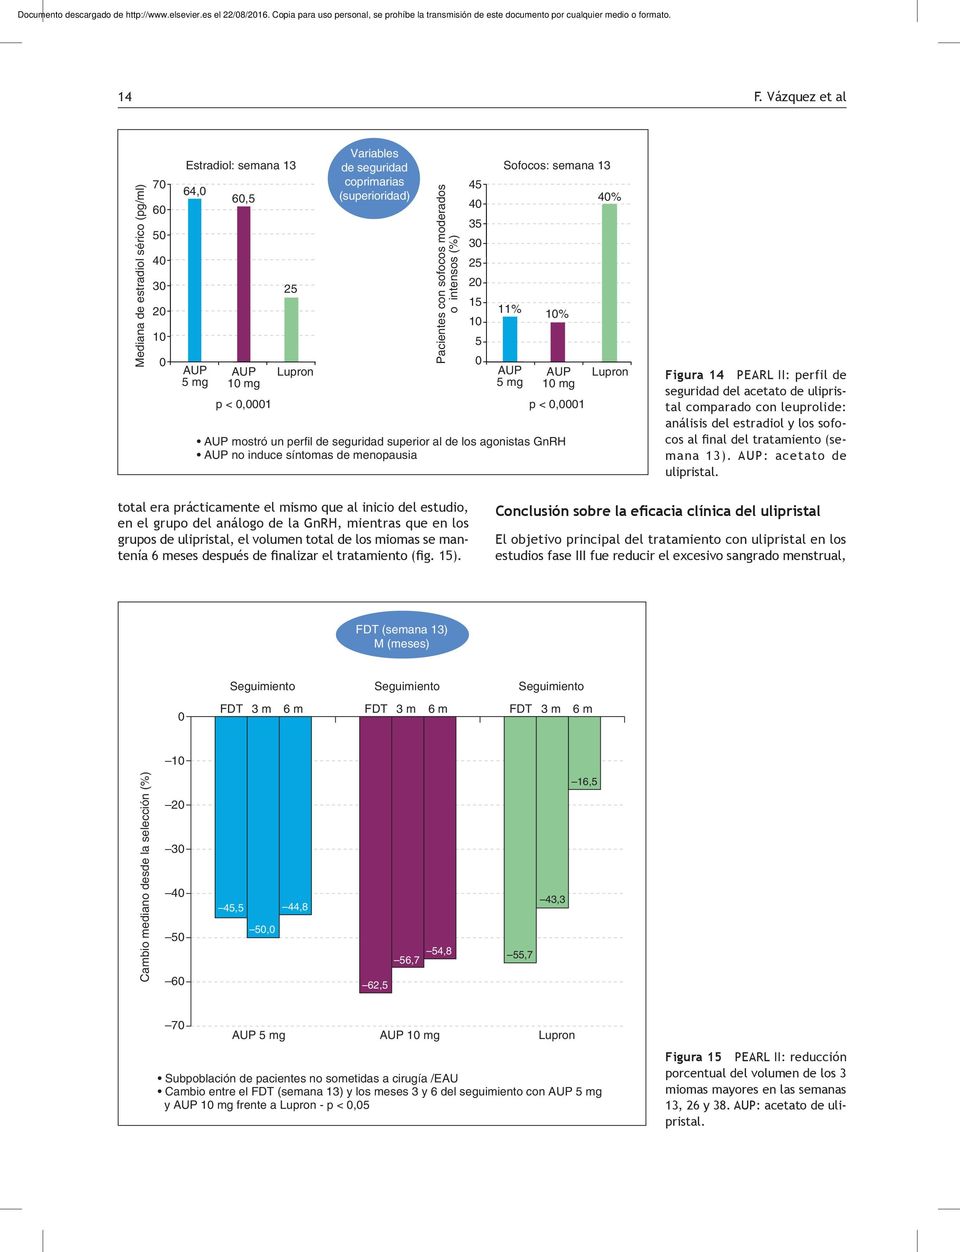 menopausia 4% Lupron Figura 14 PEARL II: perfil de seguridad del acetato de ulipristal comparado con leuprolide: análisis del estradiol y los sofocos al final del tratamiento (semana 13).